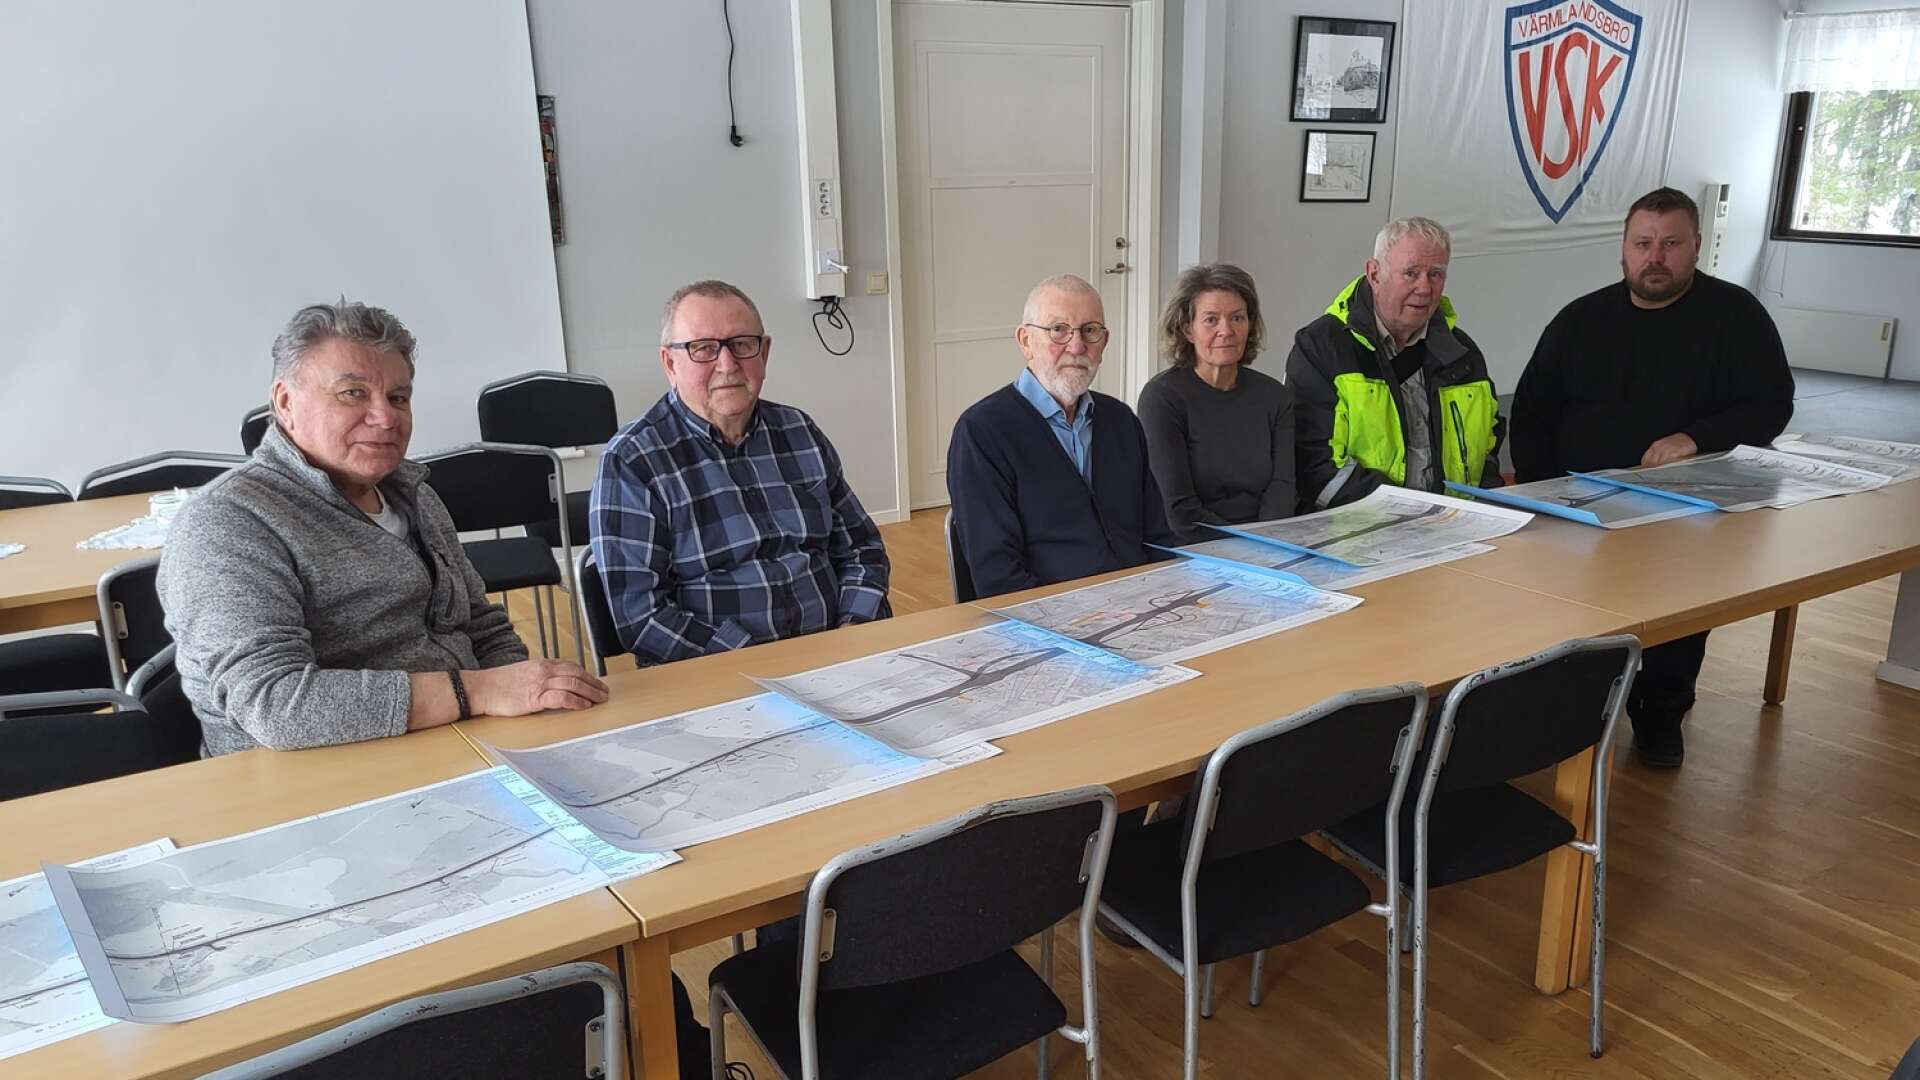 Staffan Marelius, Tore Olsson, Ulf Wandland, Ditte Wennström, Göte Dahlin och Per Olsson är en grupp mark- och husägare i Värmlandsbro som motsätter sig vägförslaget som presenterats för E45 på sträckan Säffle-Hammar.